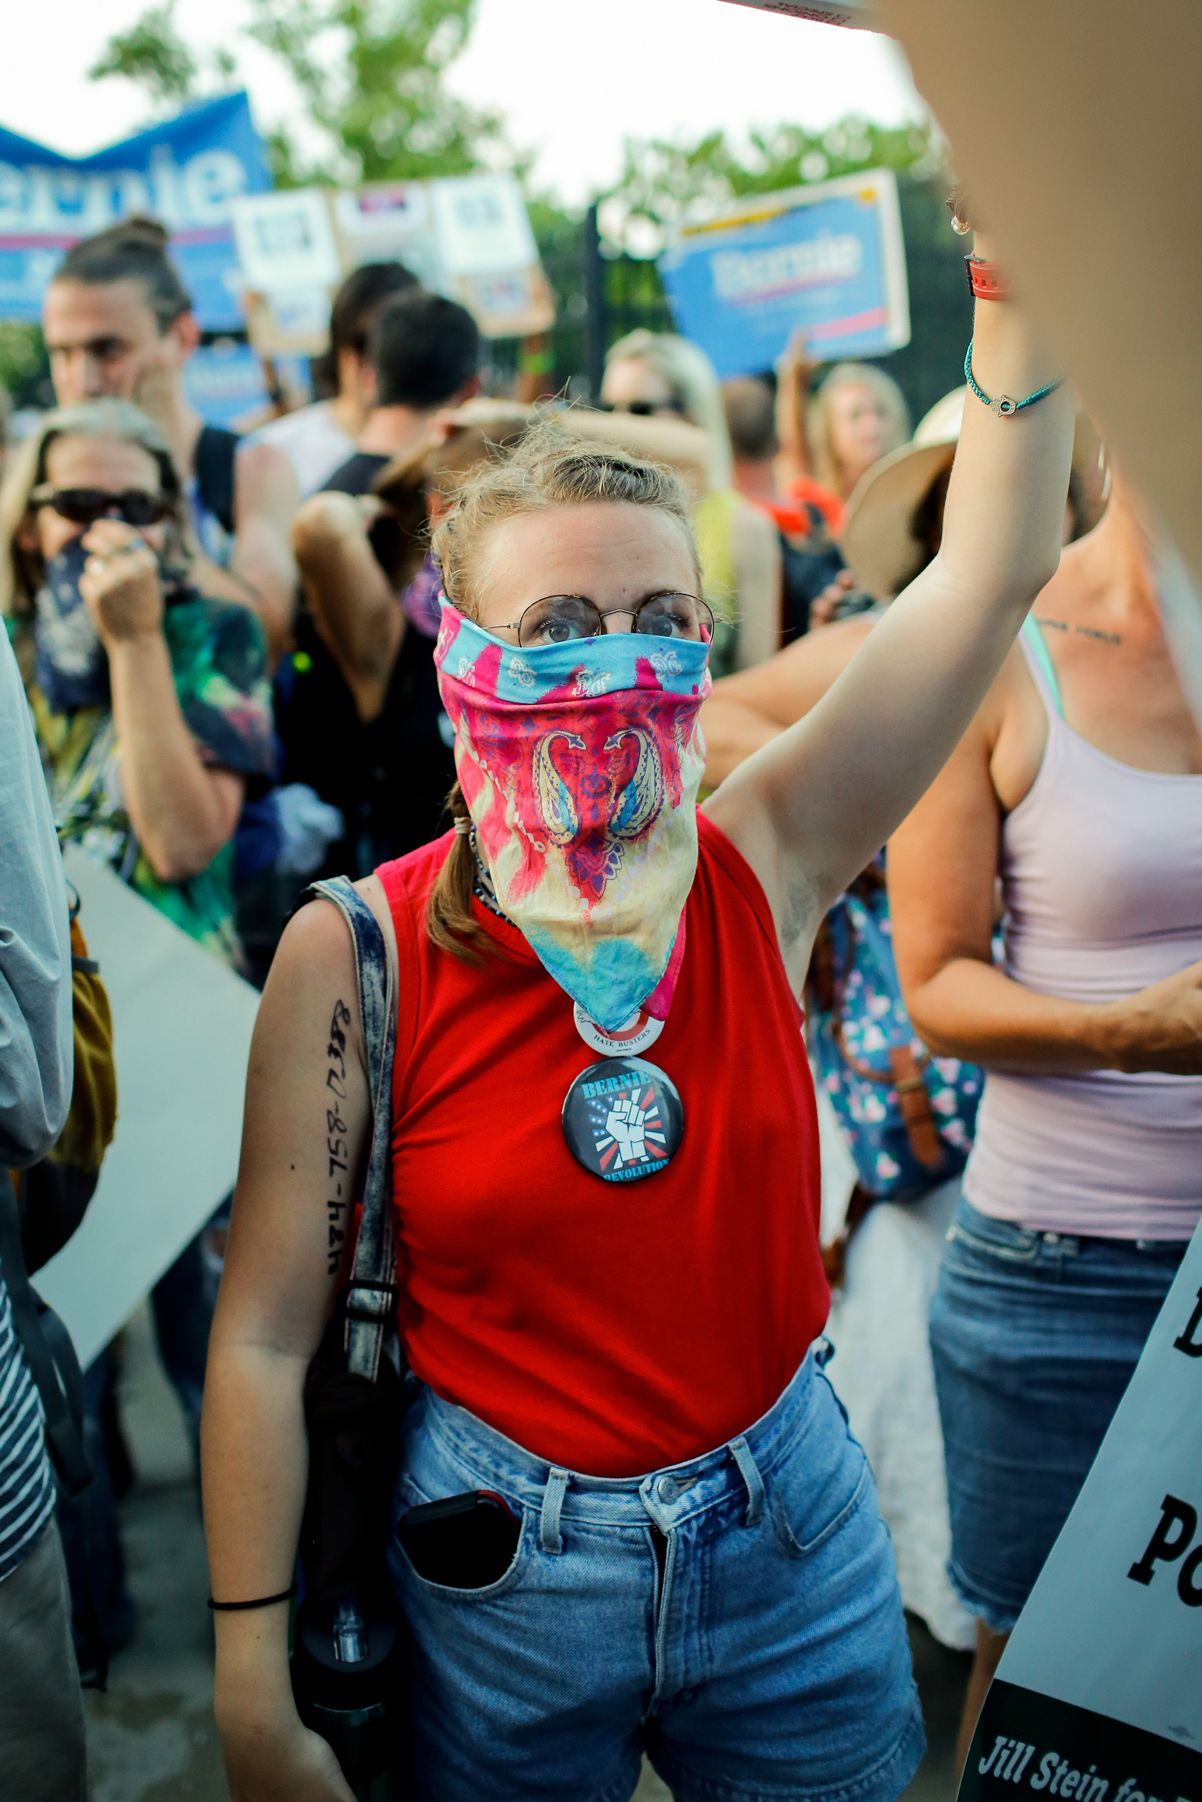 Masked Demonstrator Outside Barricade